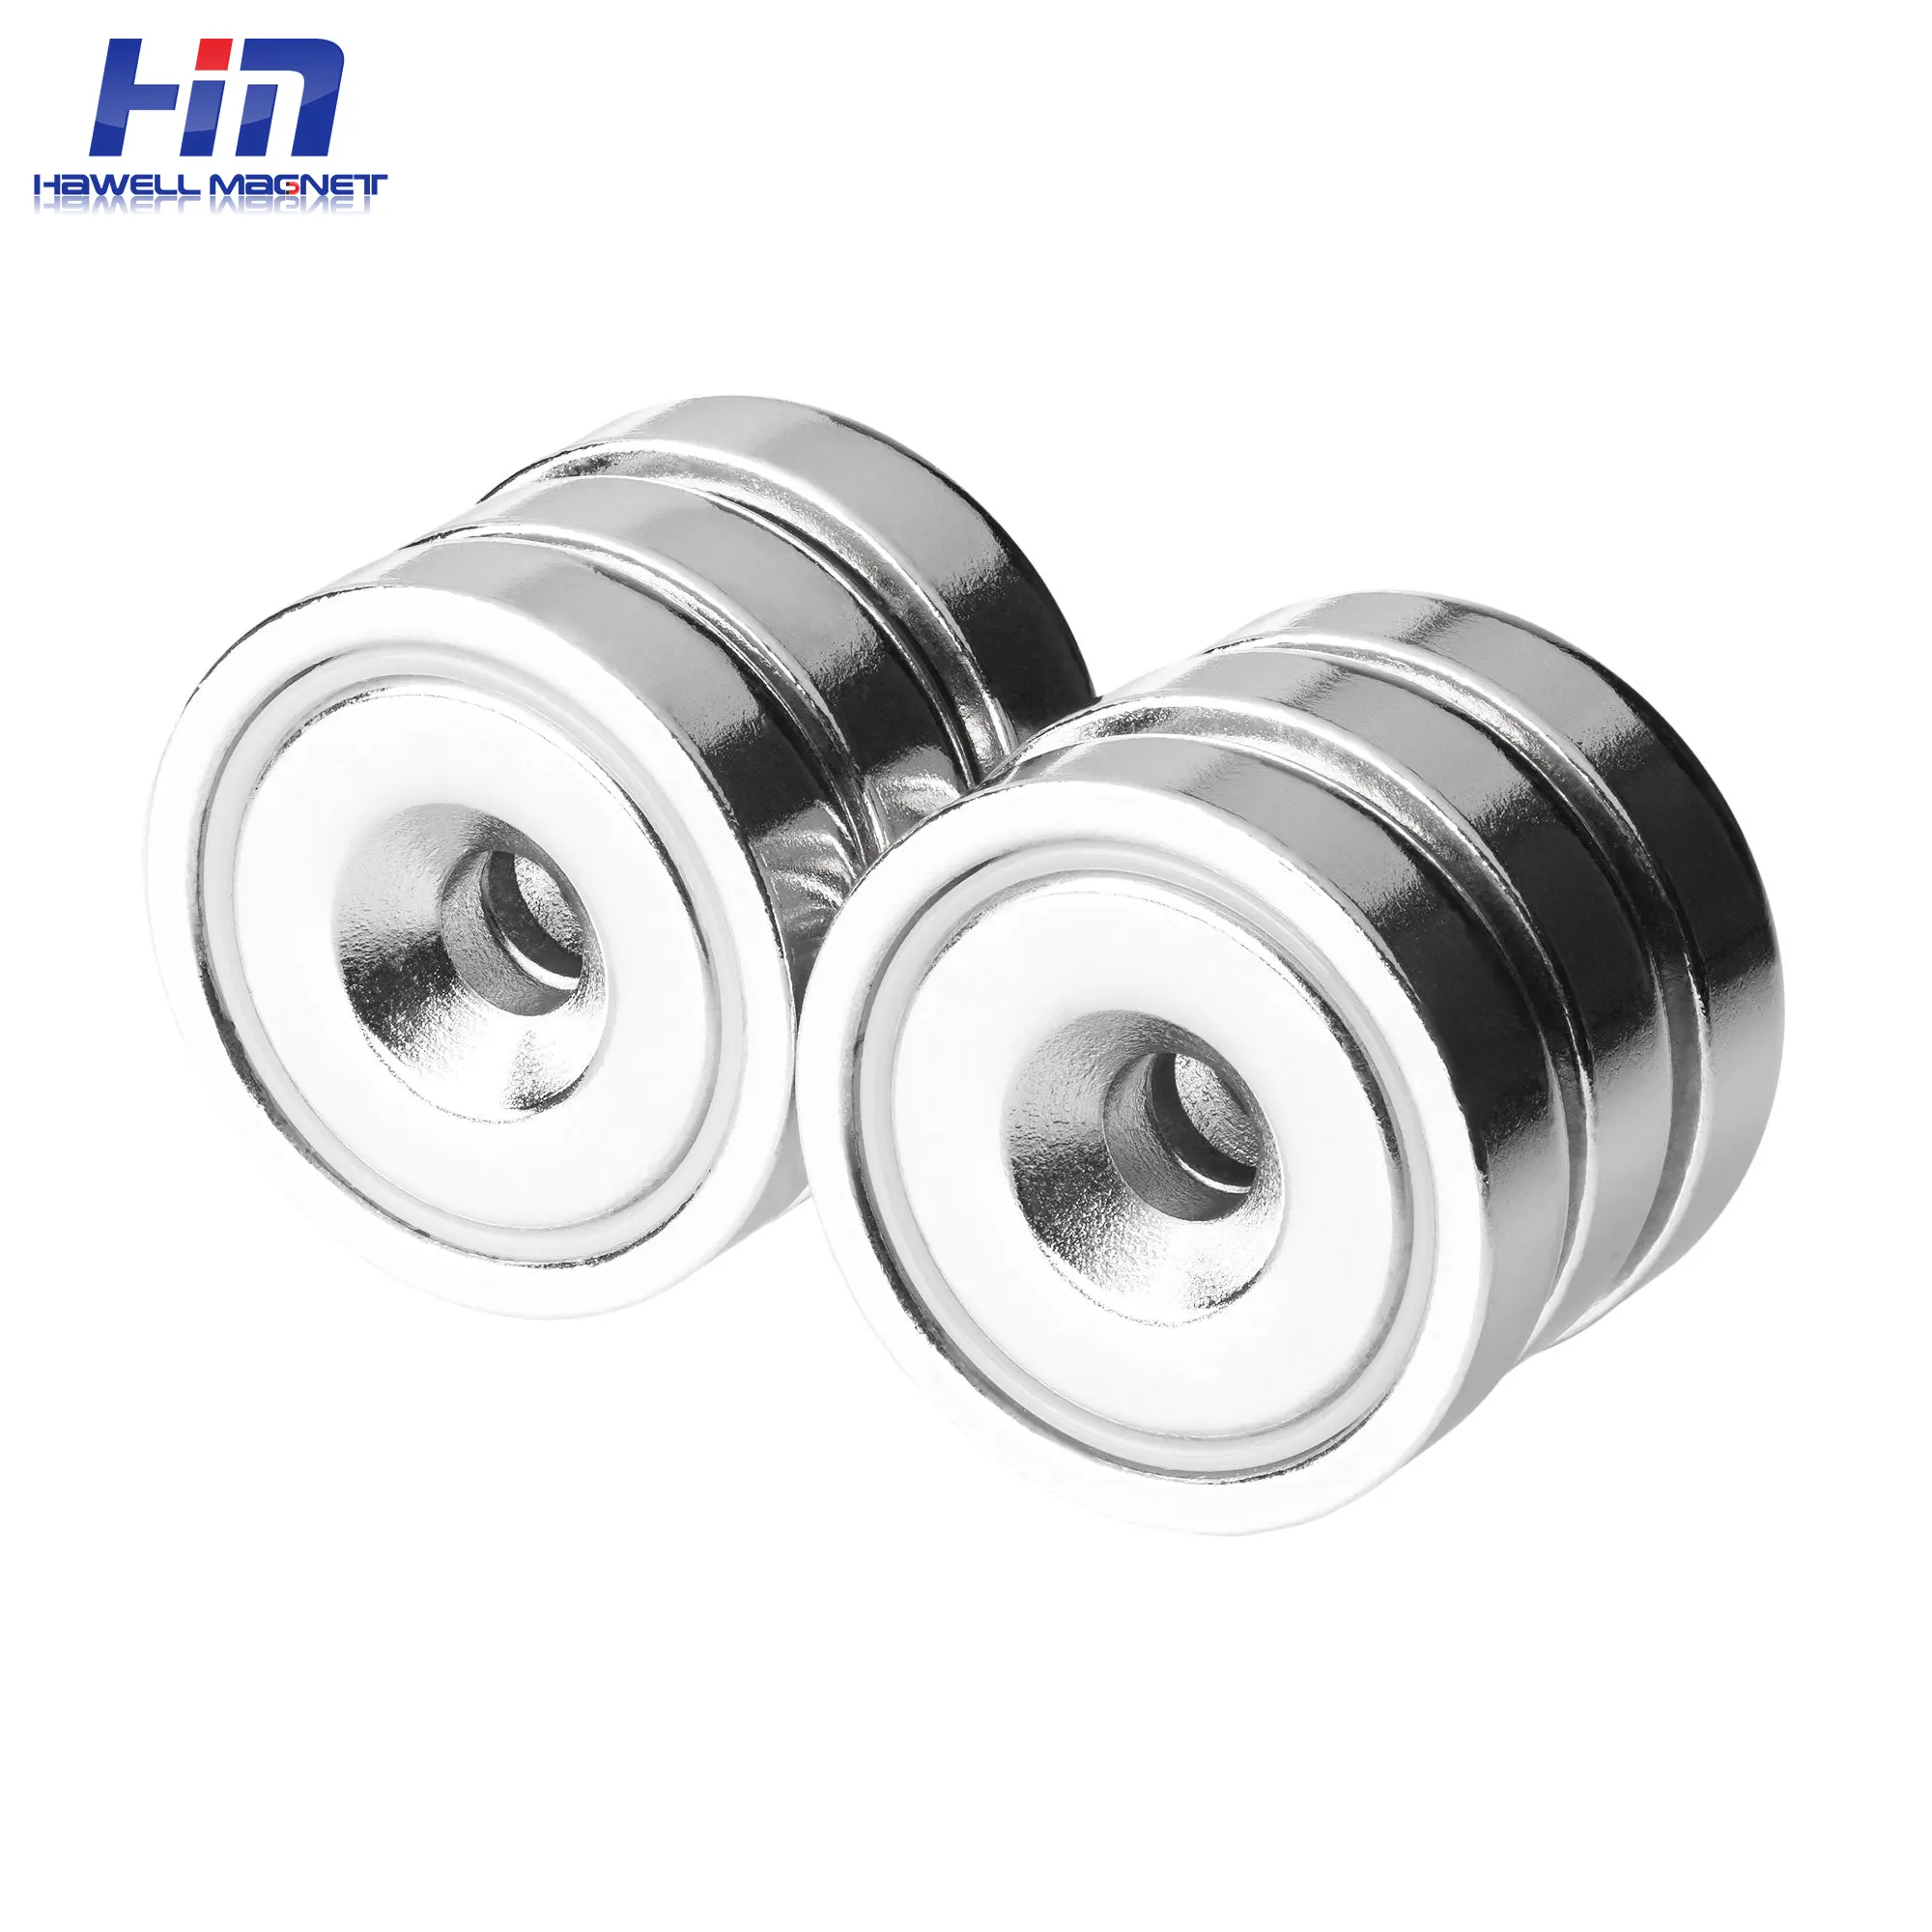 Rundbasierter Neodymium-Bahl-Magnet 100 LBS starker Seltenerd-Magnet mit Hochbelastungs-Gegenunterwasserloch und rostfreien Schrauben